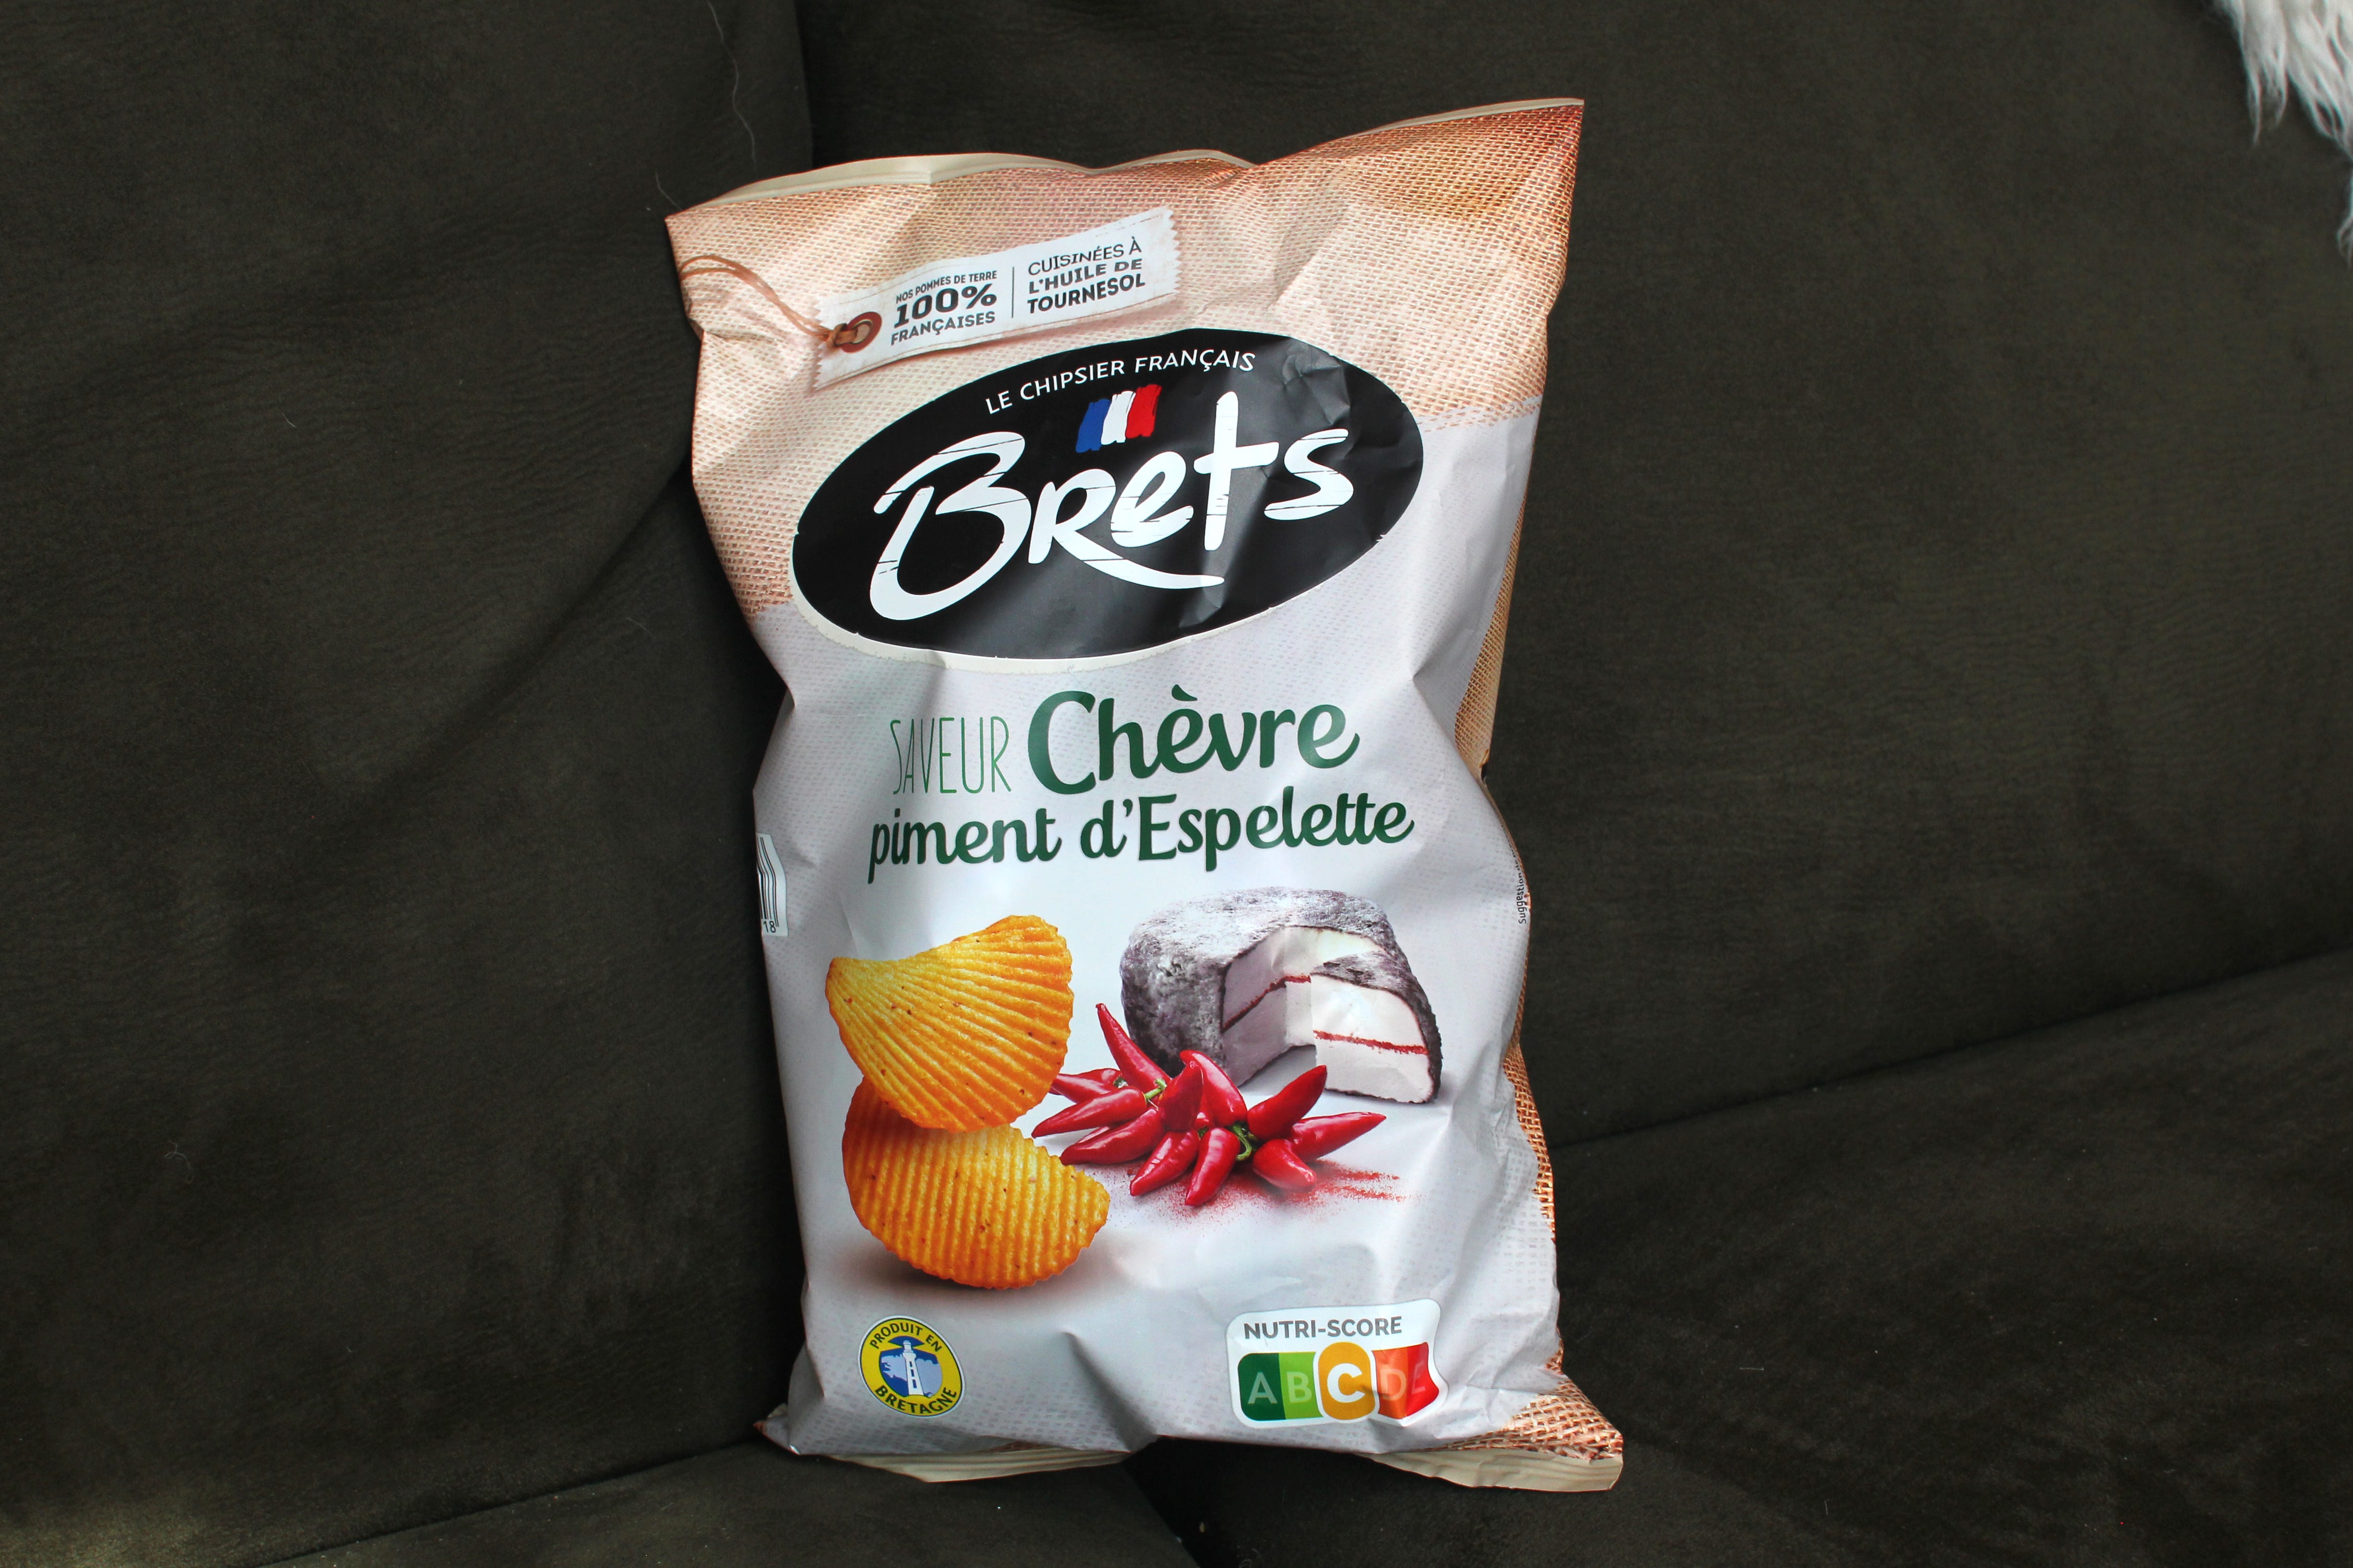 Chips bret's saveur chocolat piment (Bret's)